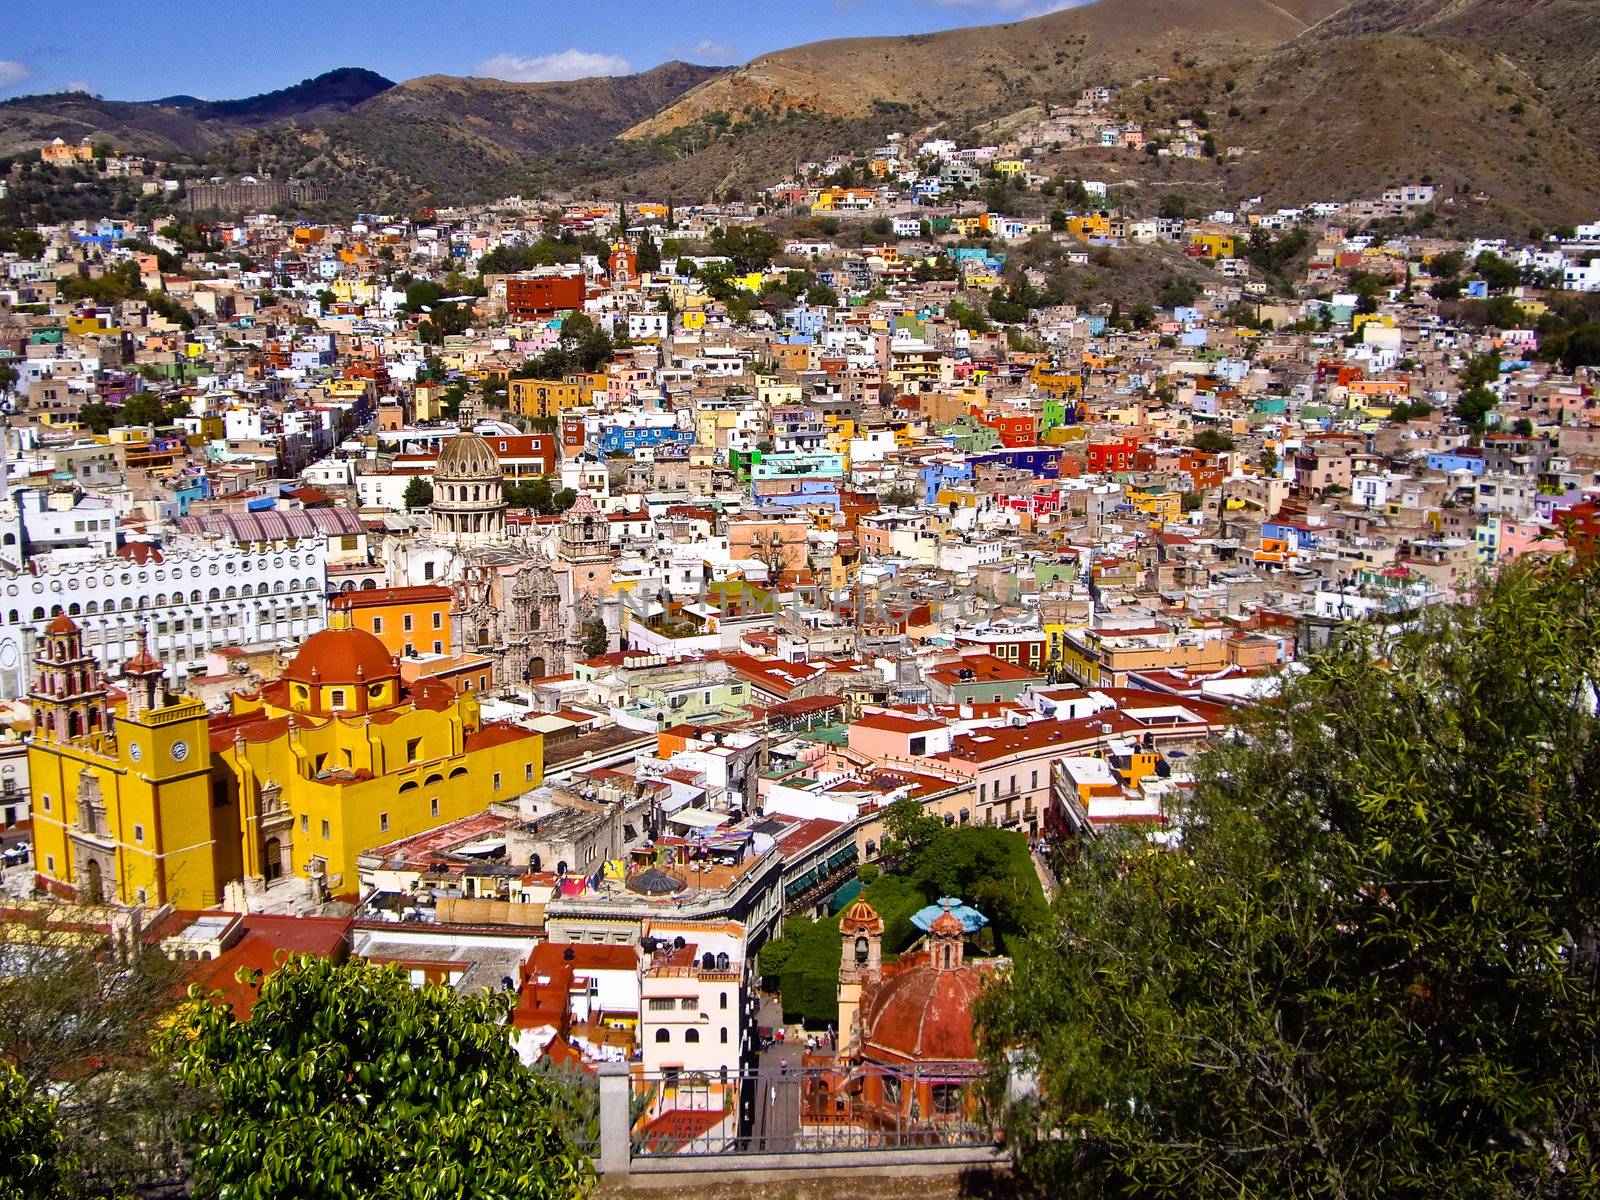 Hills of Guanajuato Mexico by emattil